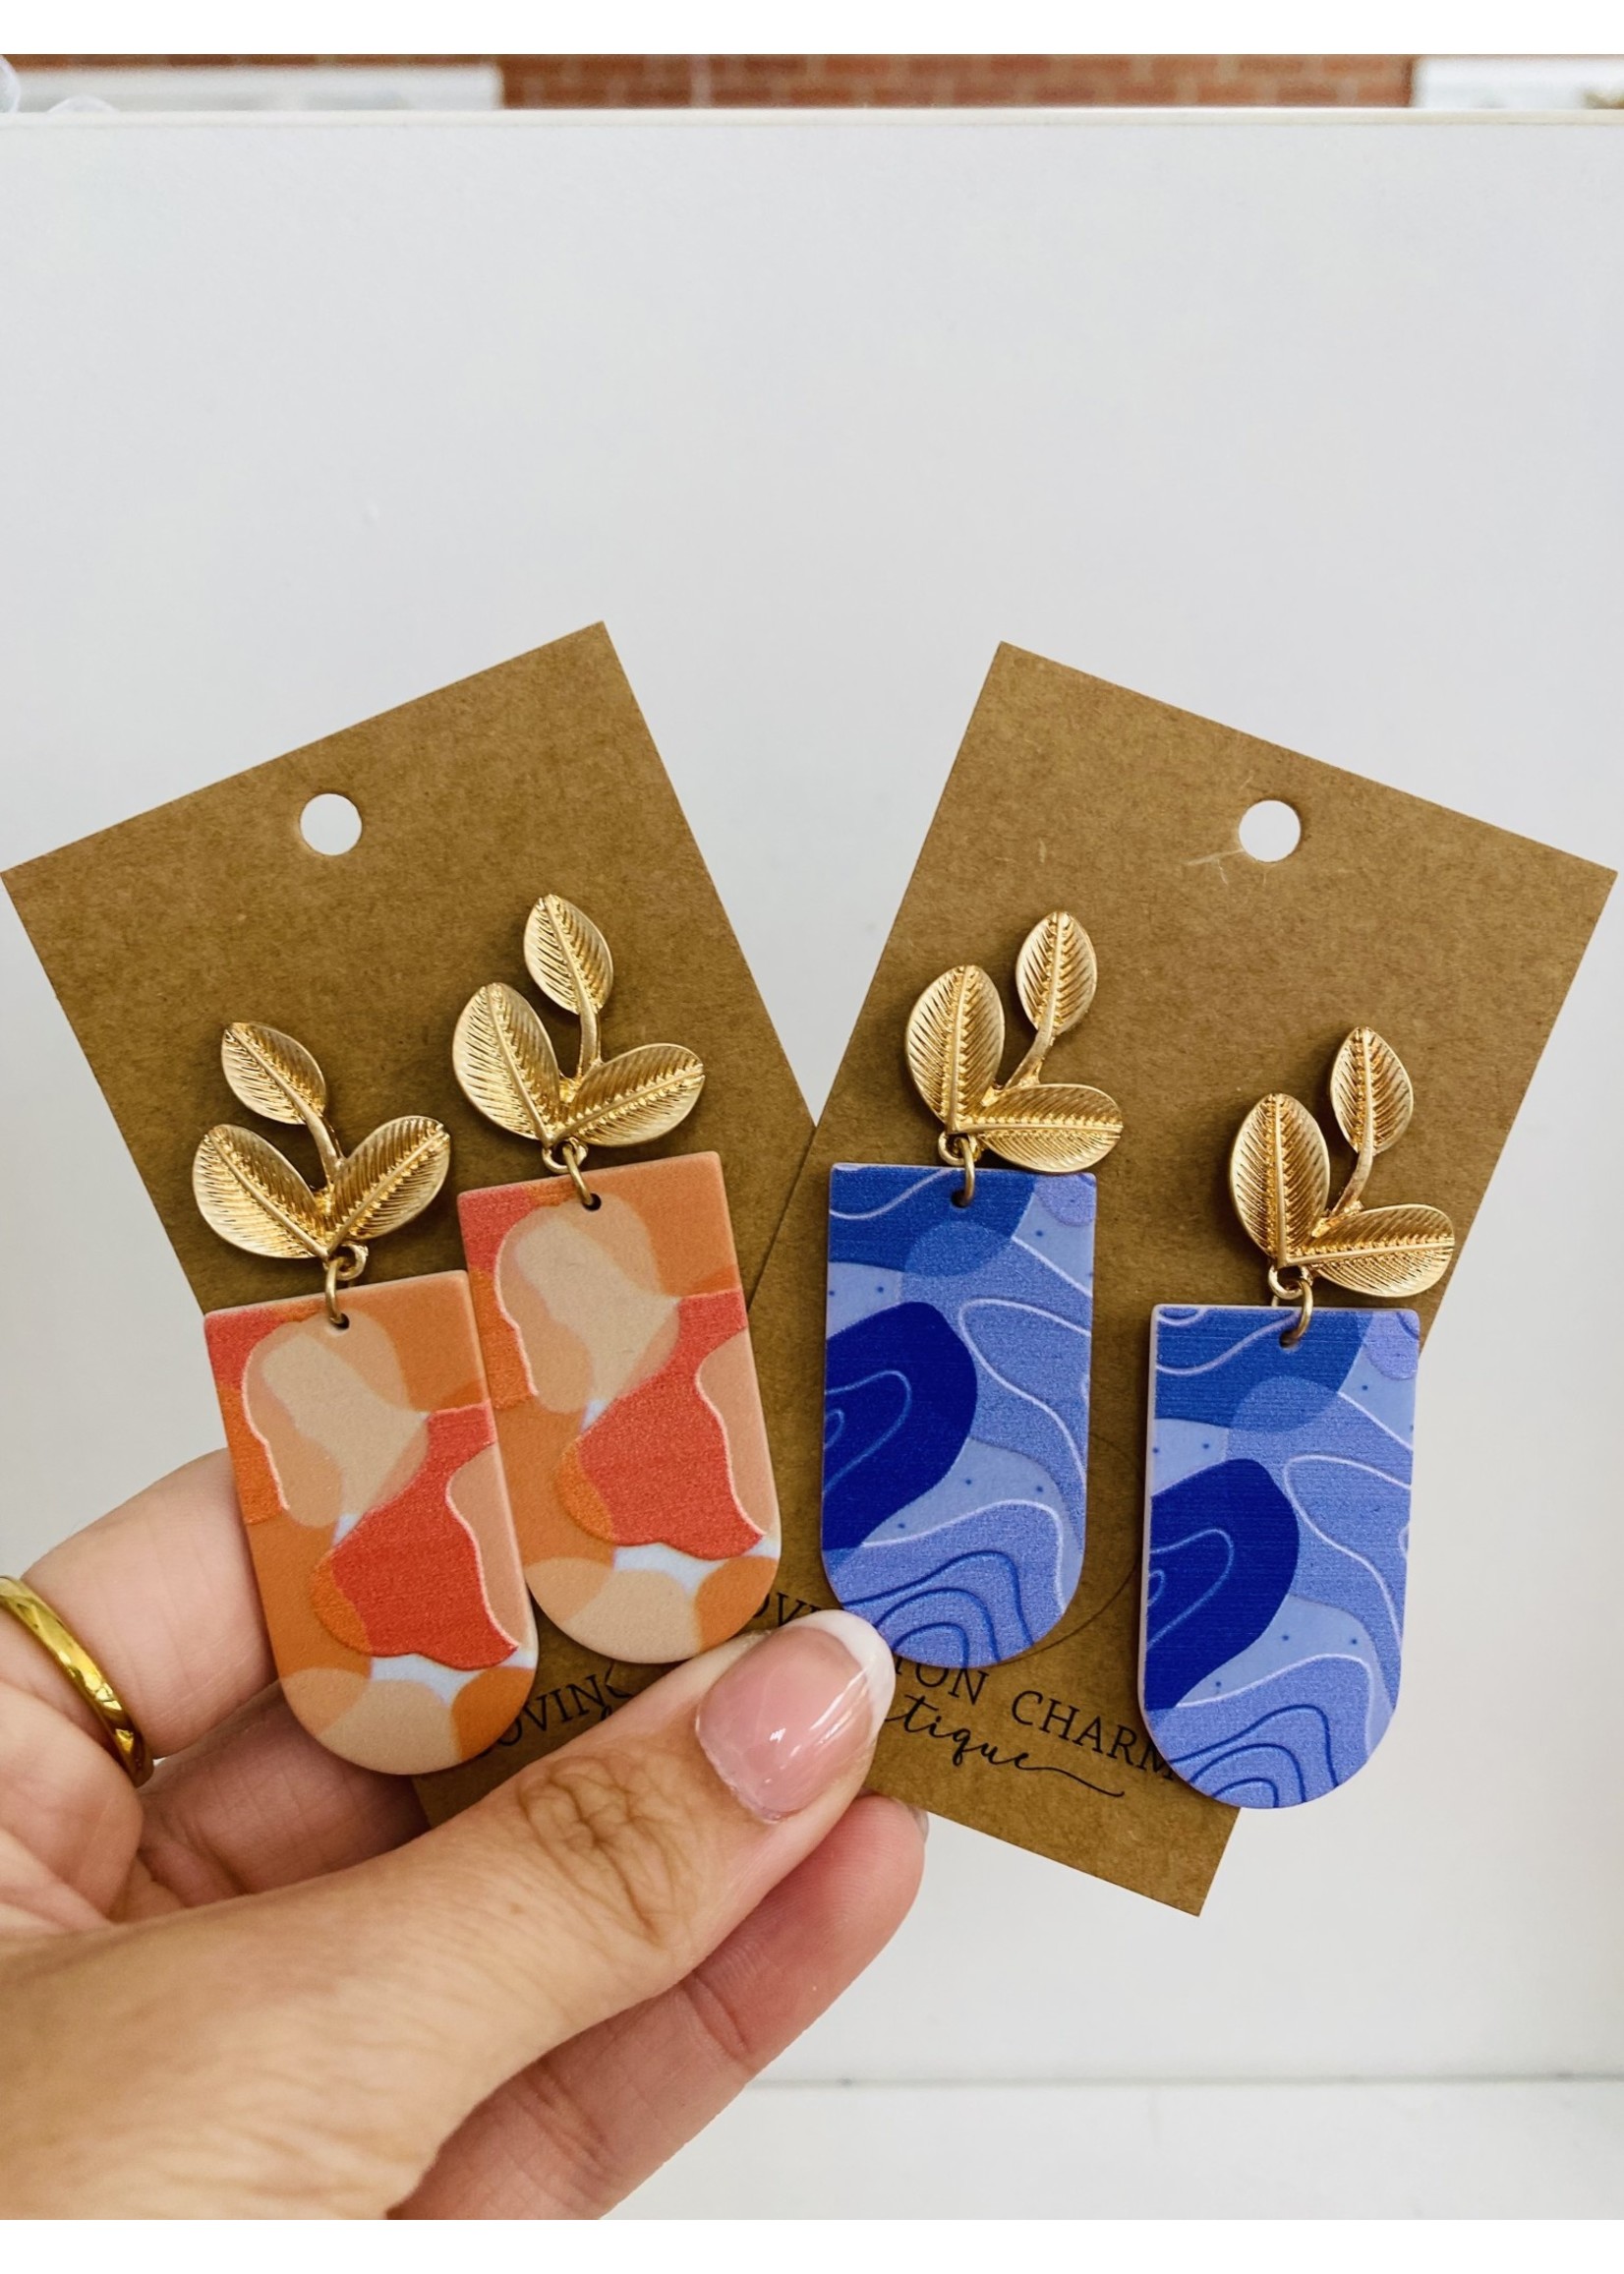 Printed Round & Leaf Earrings